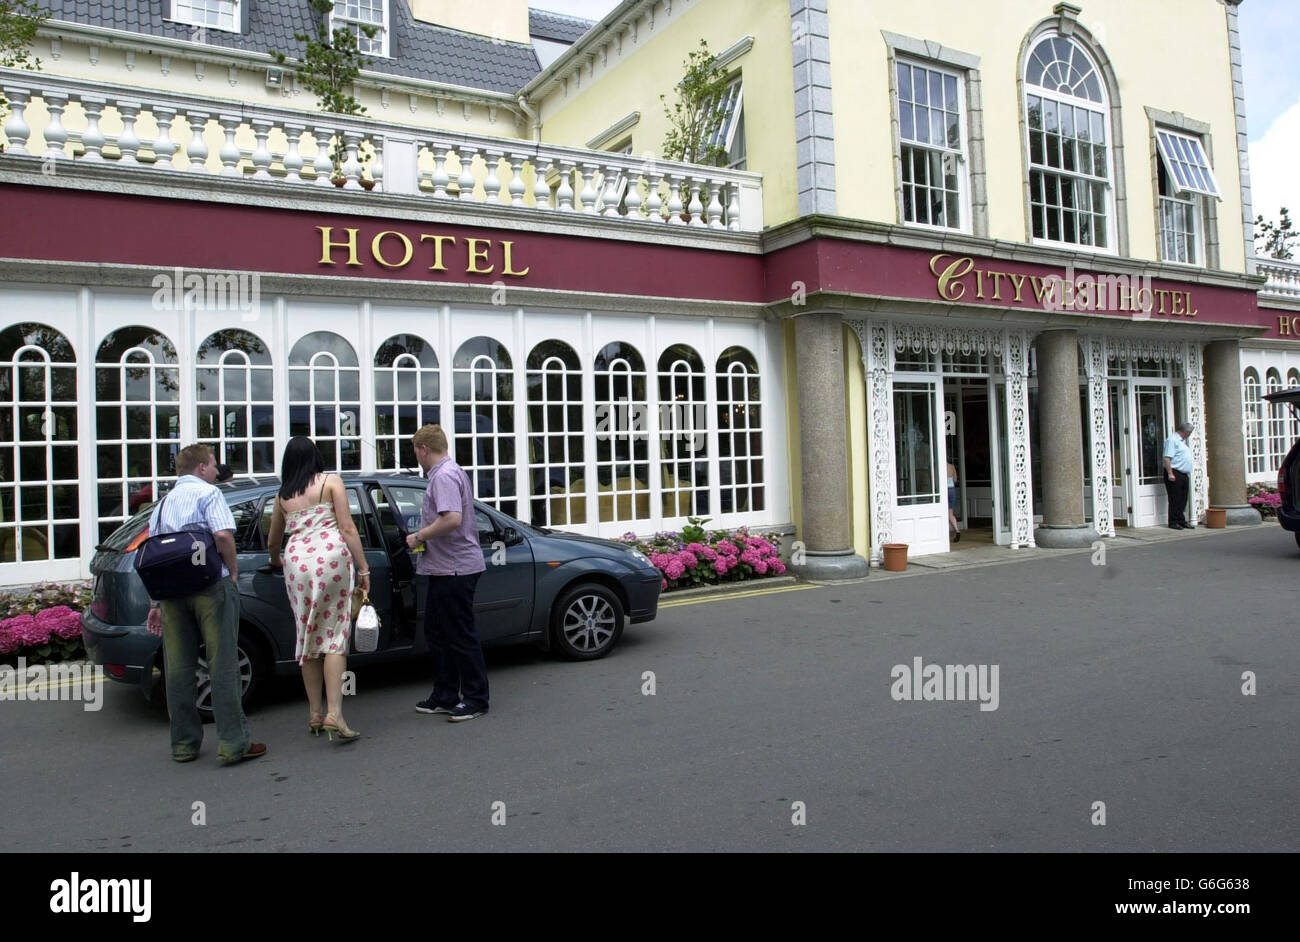 Le City West Hotel, Saggart, Co Dublin, après un raid en début de matinée. Les raiders ont suivi la direction du bar jusqu'au coffre-fort, l'ont forcée à l'ouvrir et l'ont attachée. Elle a ensuite réussi à s'échapper et a déclenché l'alarme. Les hommes se sont échappés dans une voiture - considérée comme une Volvo bleue - avec une estimation de 14,000 (20,000 euros). La police enquêtait sur l'incident et a fait appel pour que des témoins se présentent. Banque D'Images